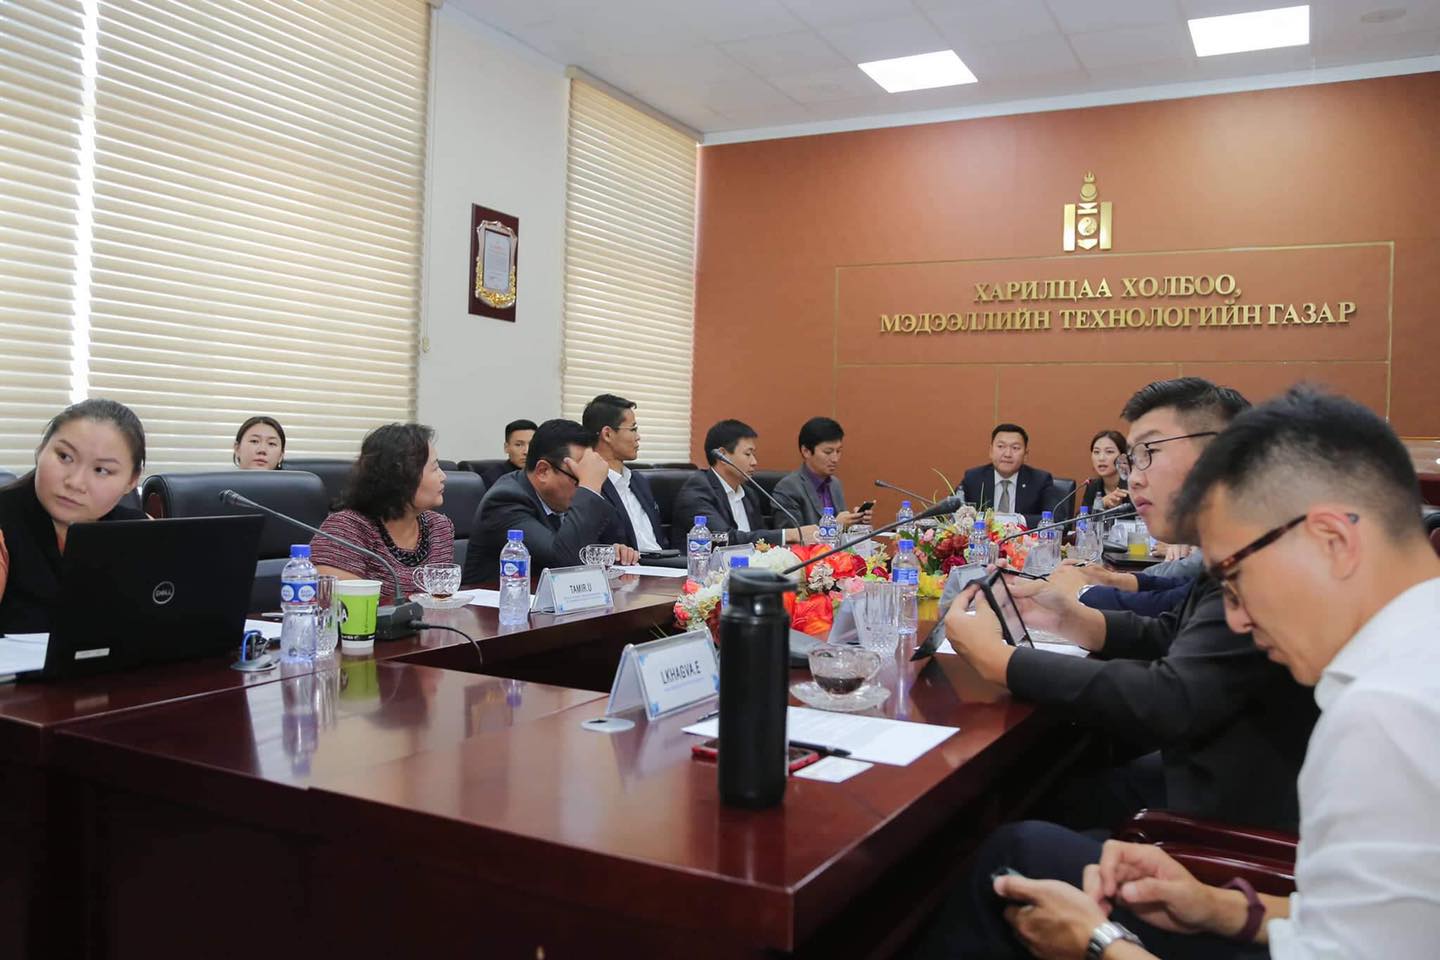 Төрийн бүх үйлчилгээ E-Mongolia дээр төвлөрч иргэд хаанаас ч үйлчилгээ авах боломж бүрдэж байна